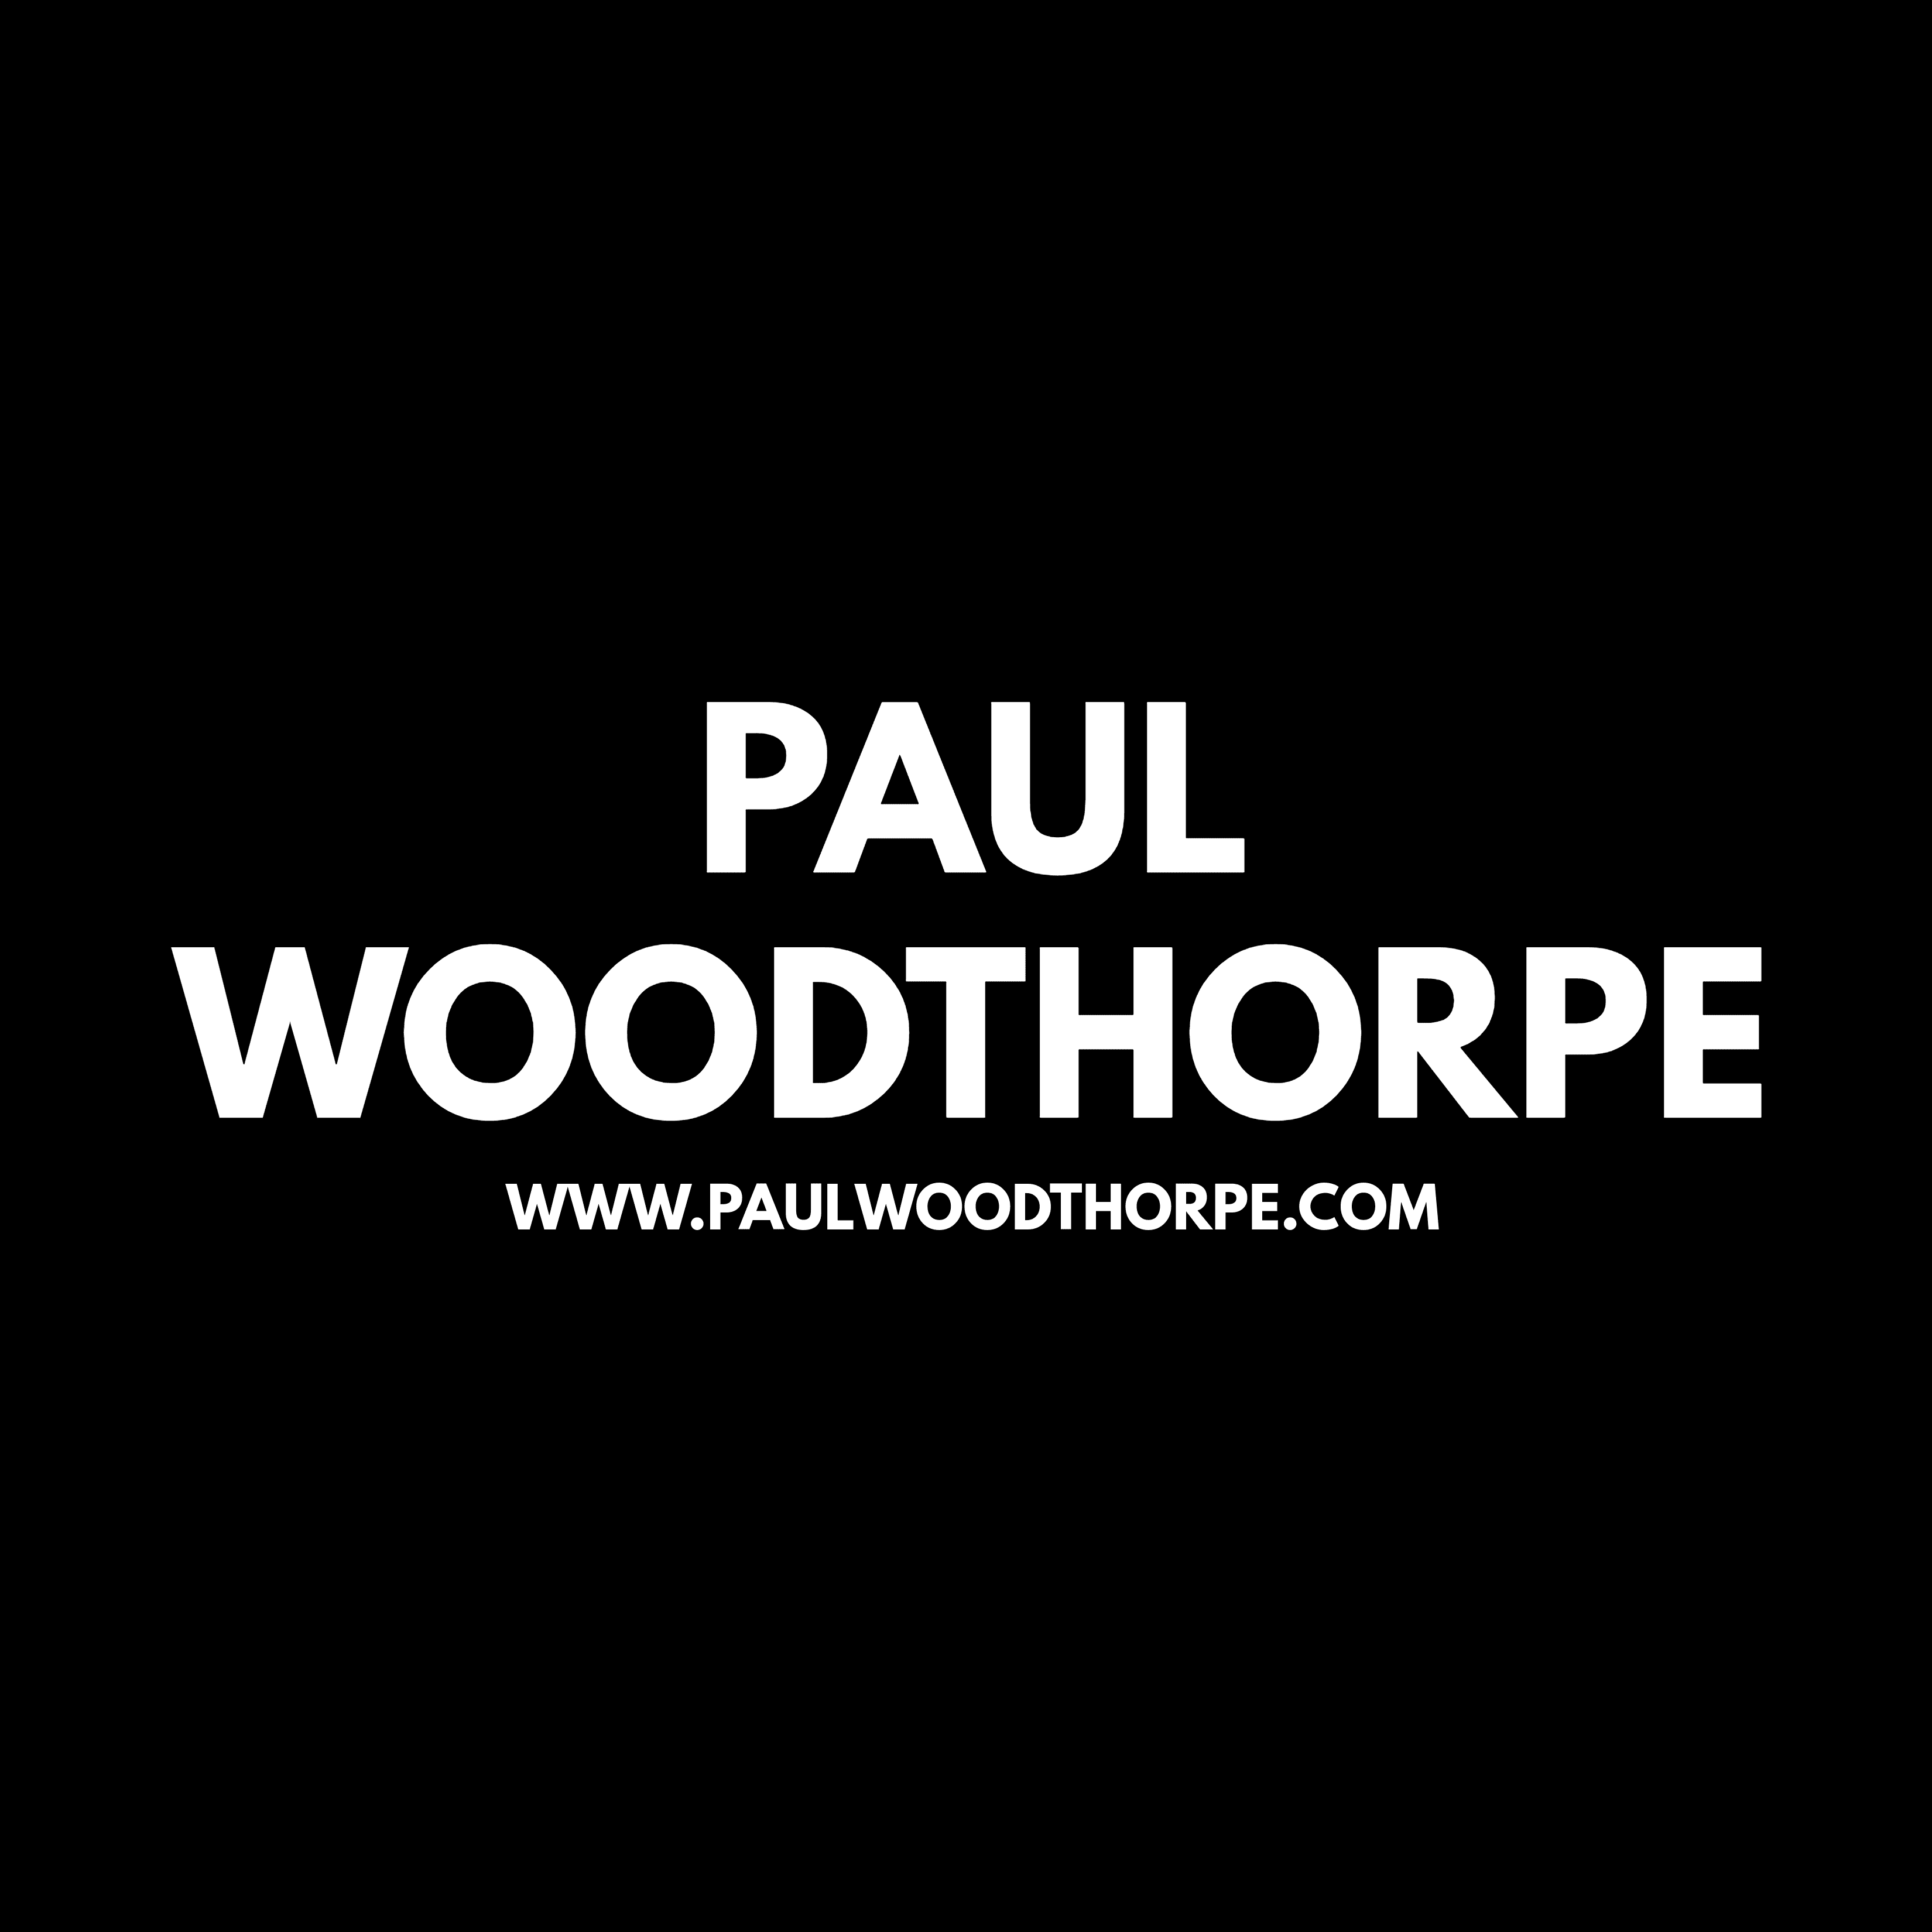 PaulWoodthorpe